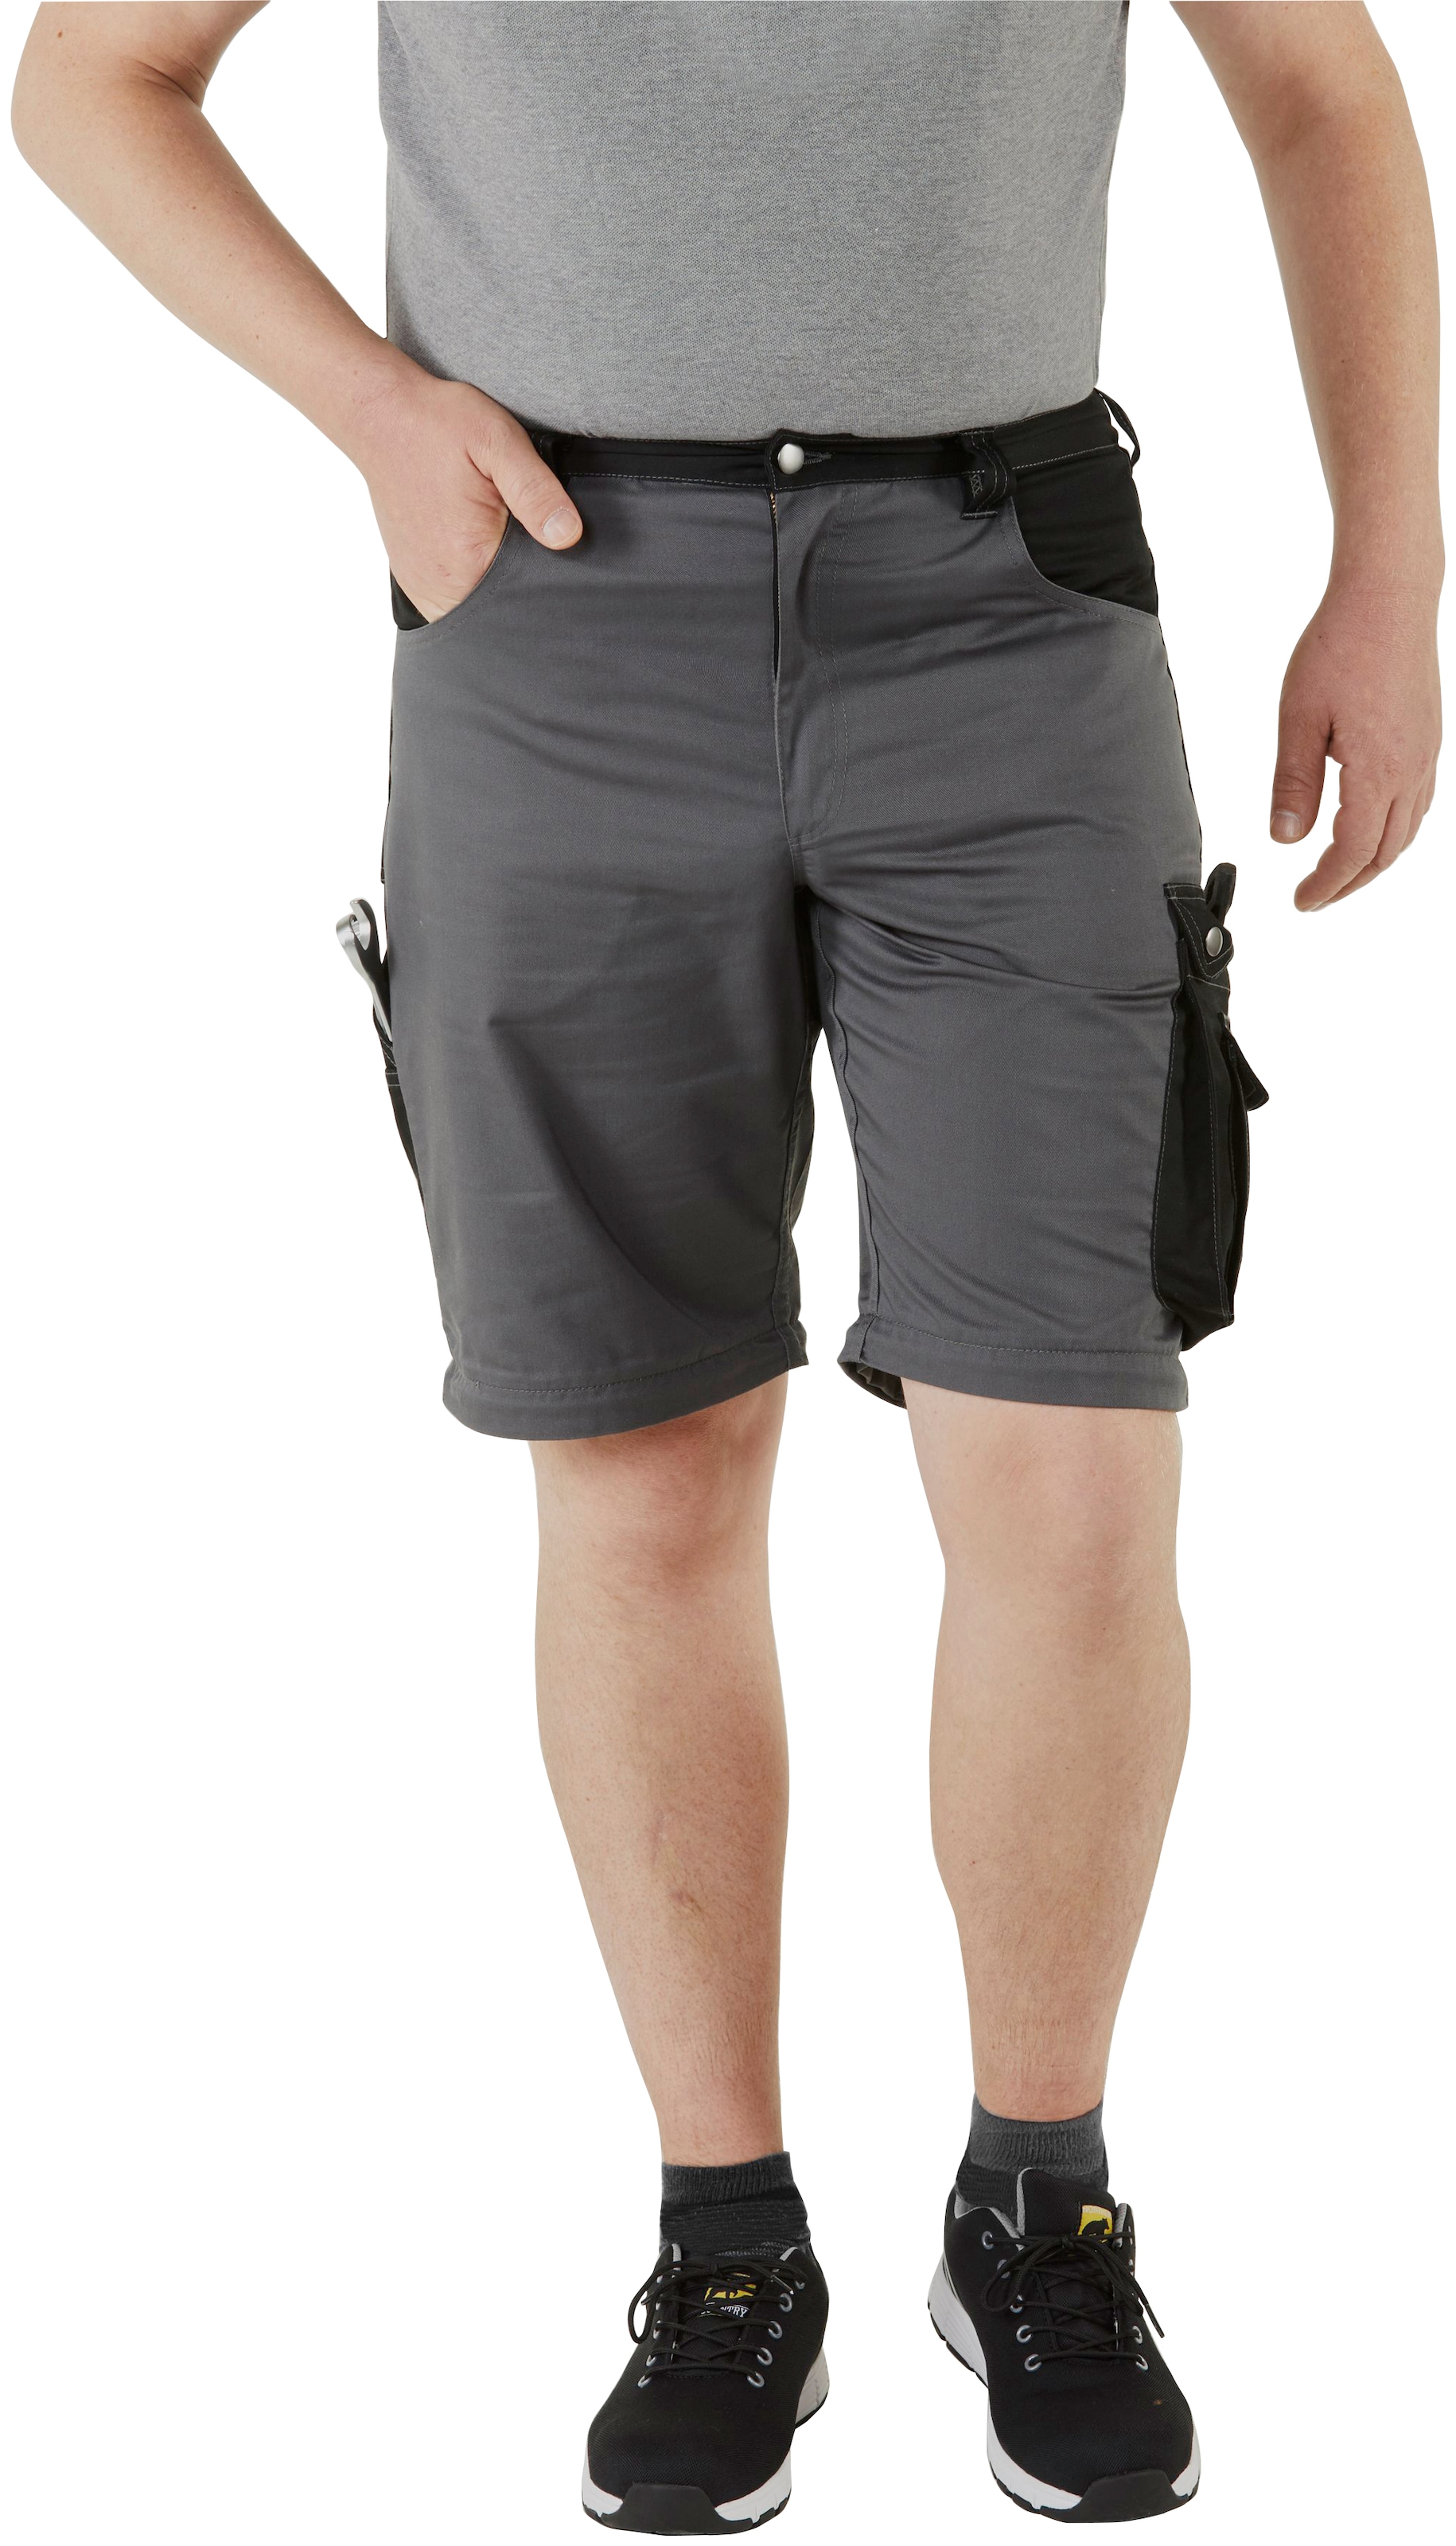 Northern Country Arbeitshose »Worker«, (verstärkter Kniebereich, Beinverlängerung möglich, 8 Taschen), mit Zipp-off Funktion: Shorts und lange Arbeitshose in einem